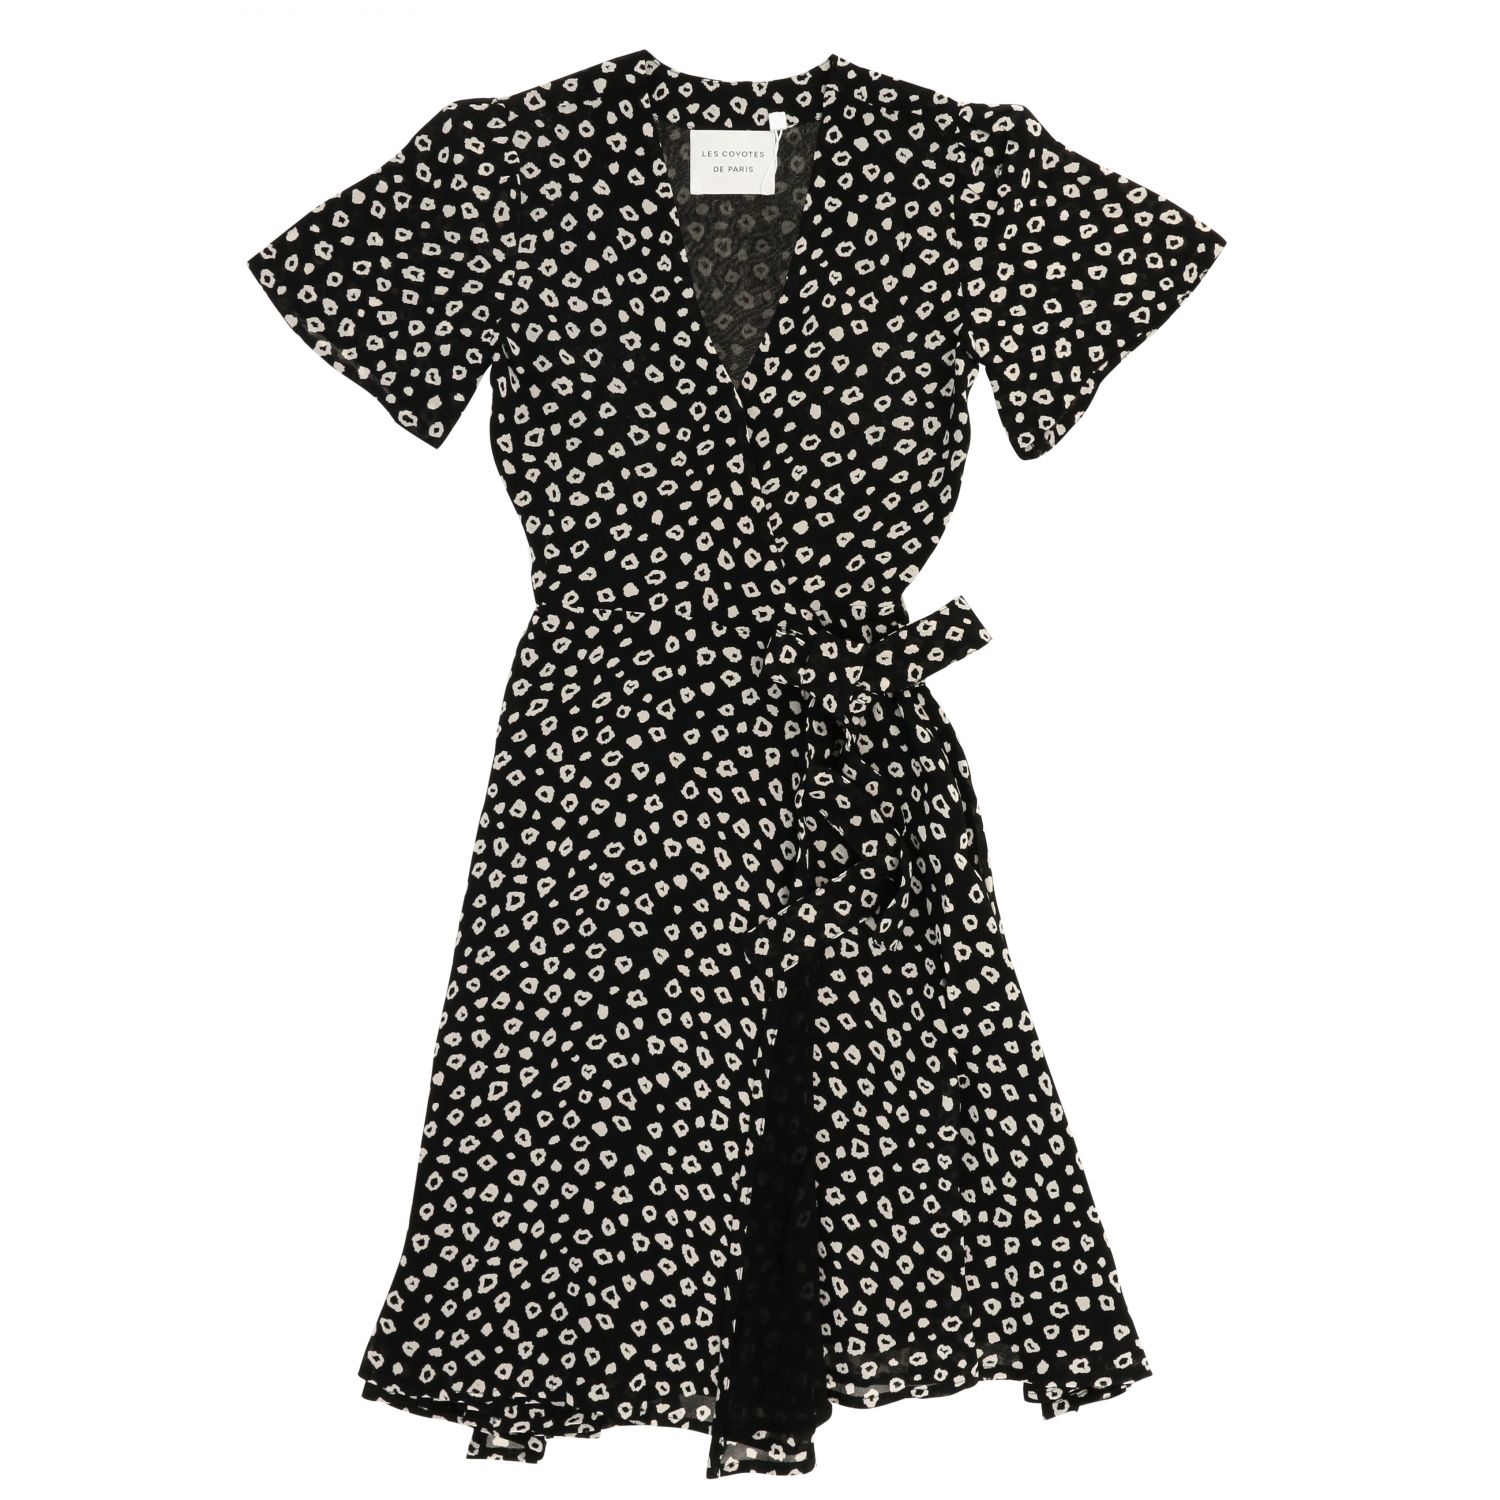 Les Coyotes De Paris Outlet: micro patterned dress - Black | Dress Les ...